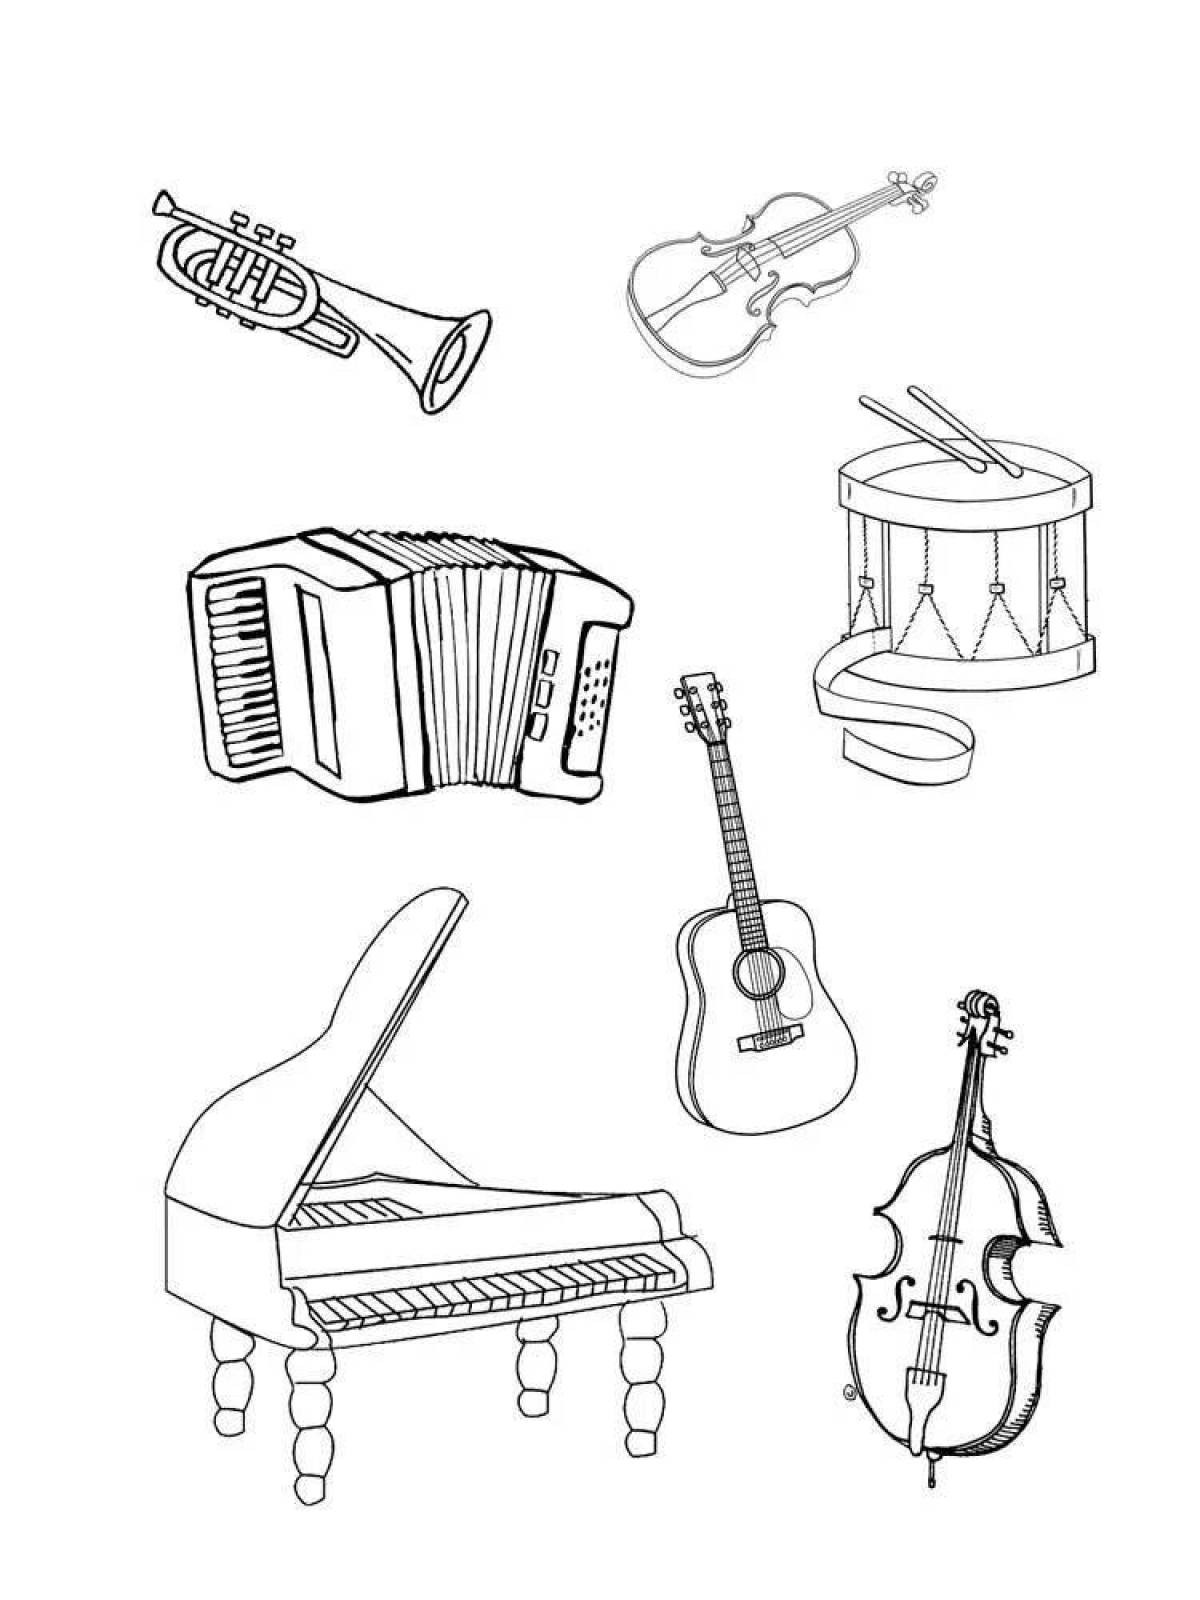 Музыкальные инструменты картинки Изображения – скачать бесплатно на Freepik